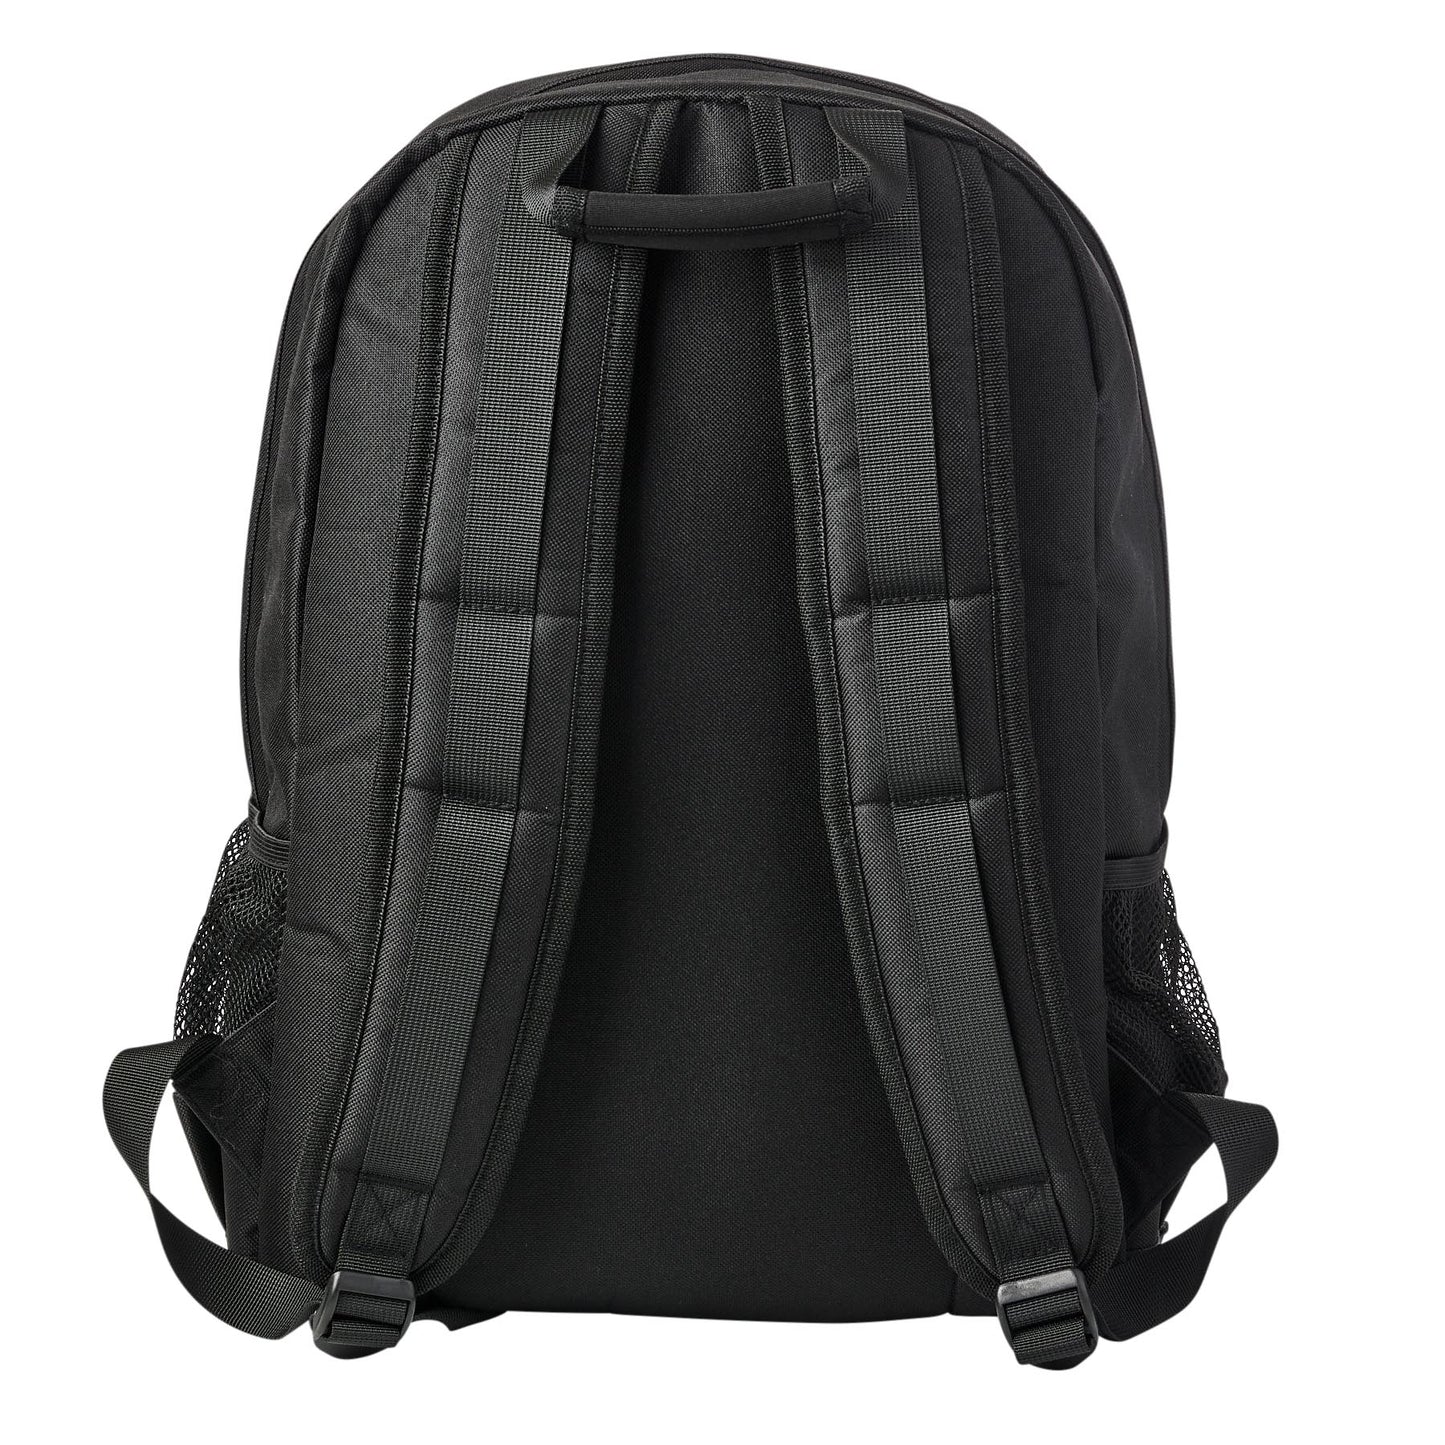 Santa Cruz - Global Flame Dot Backpack